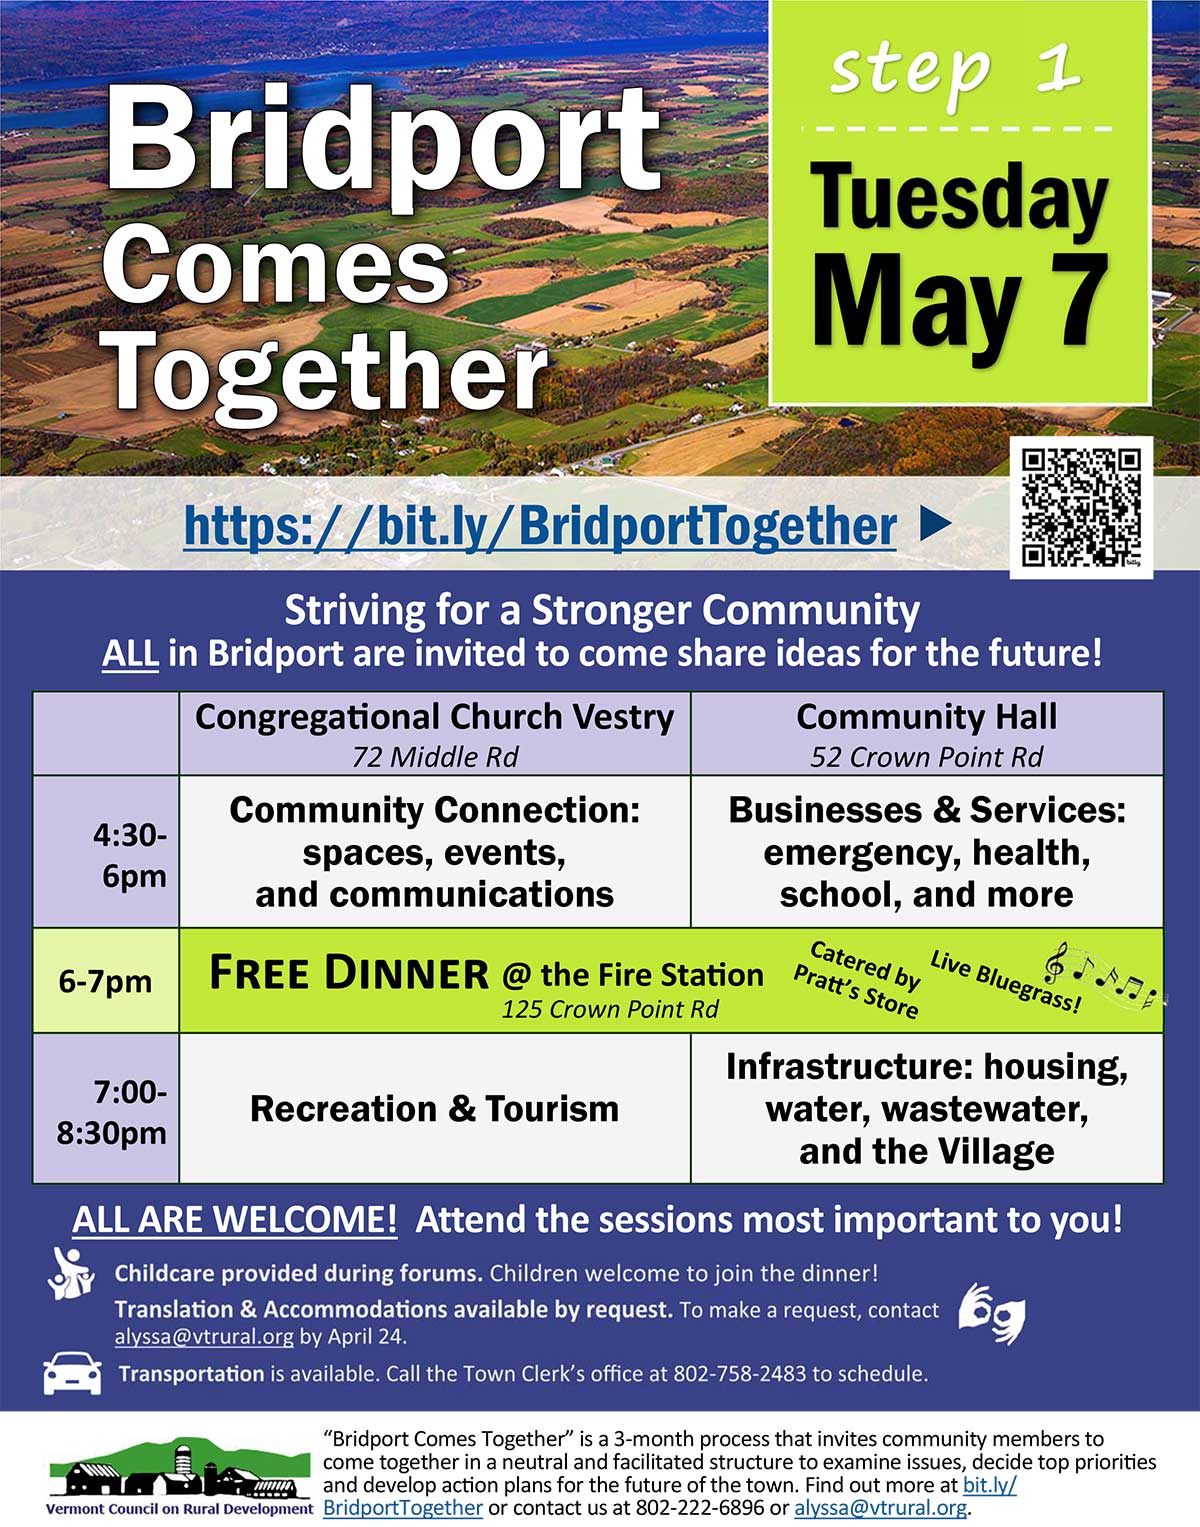 Bridport Comes Together event flyer